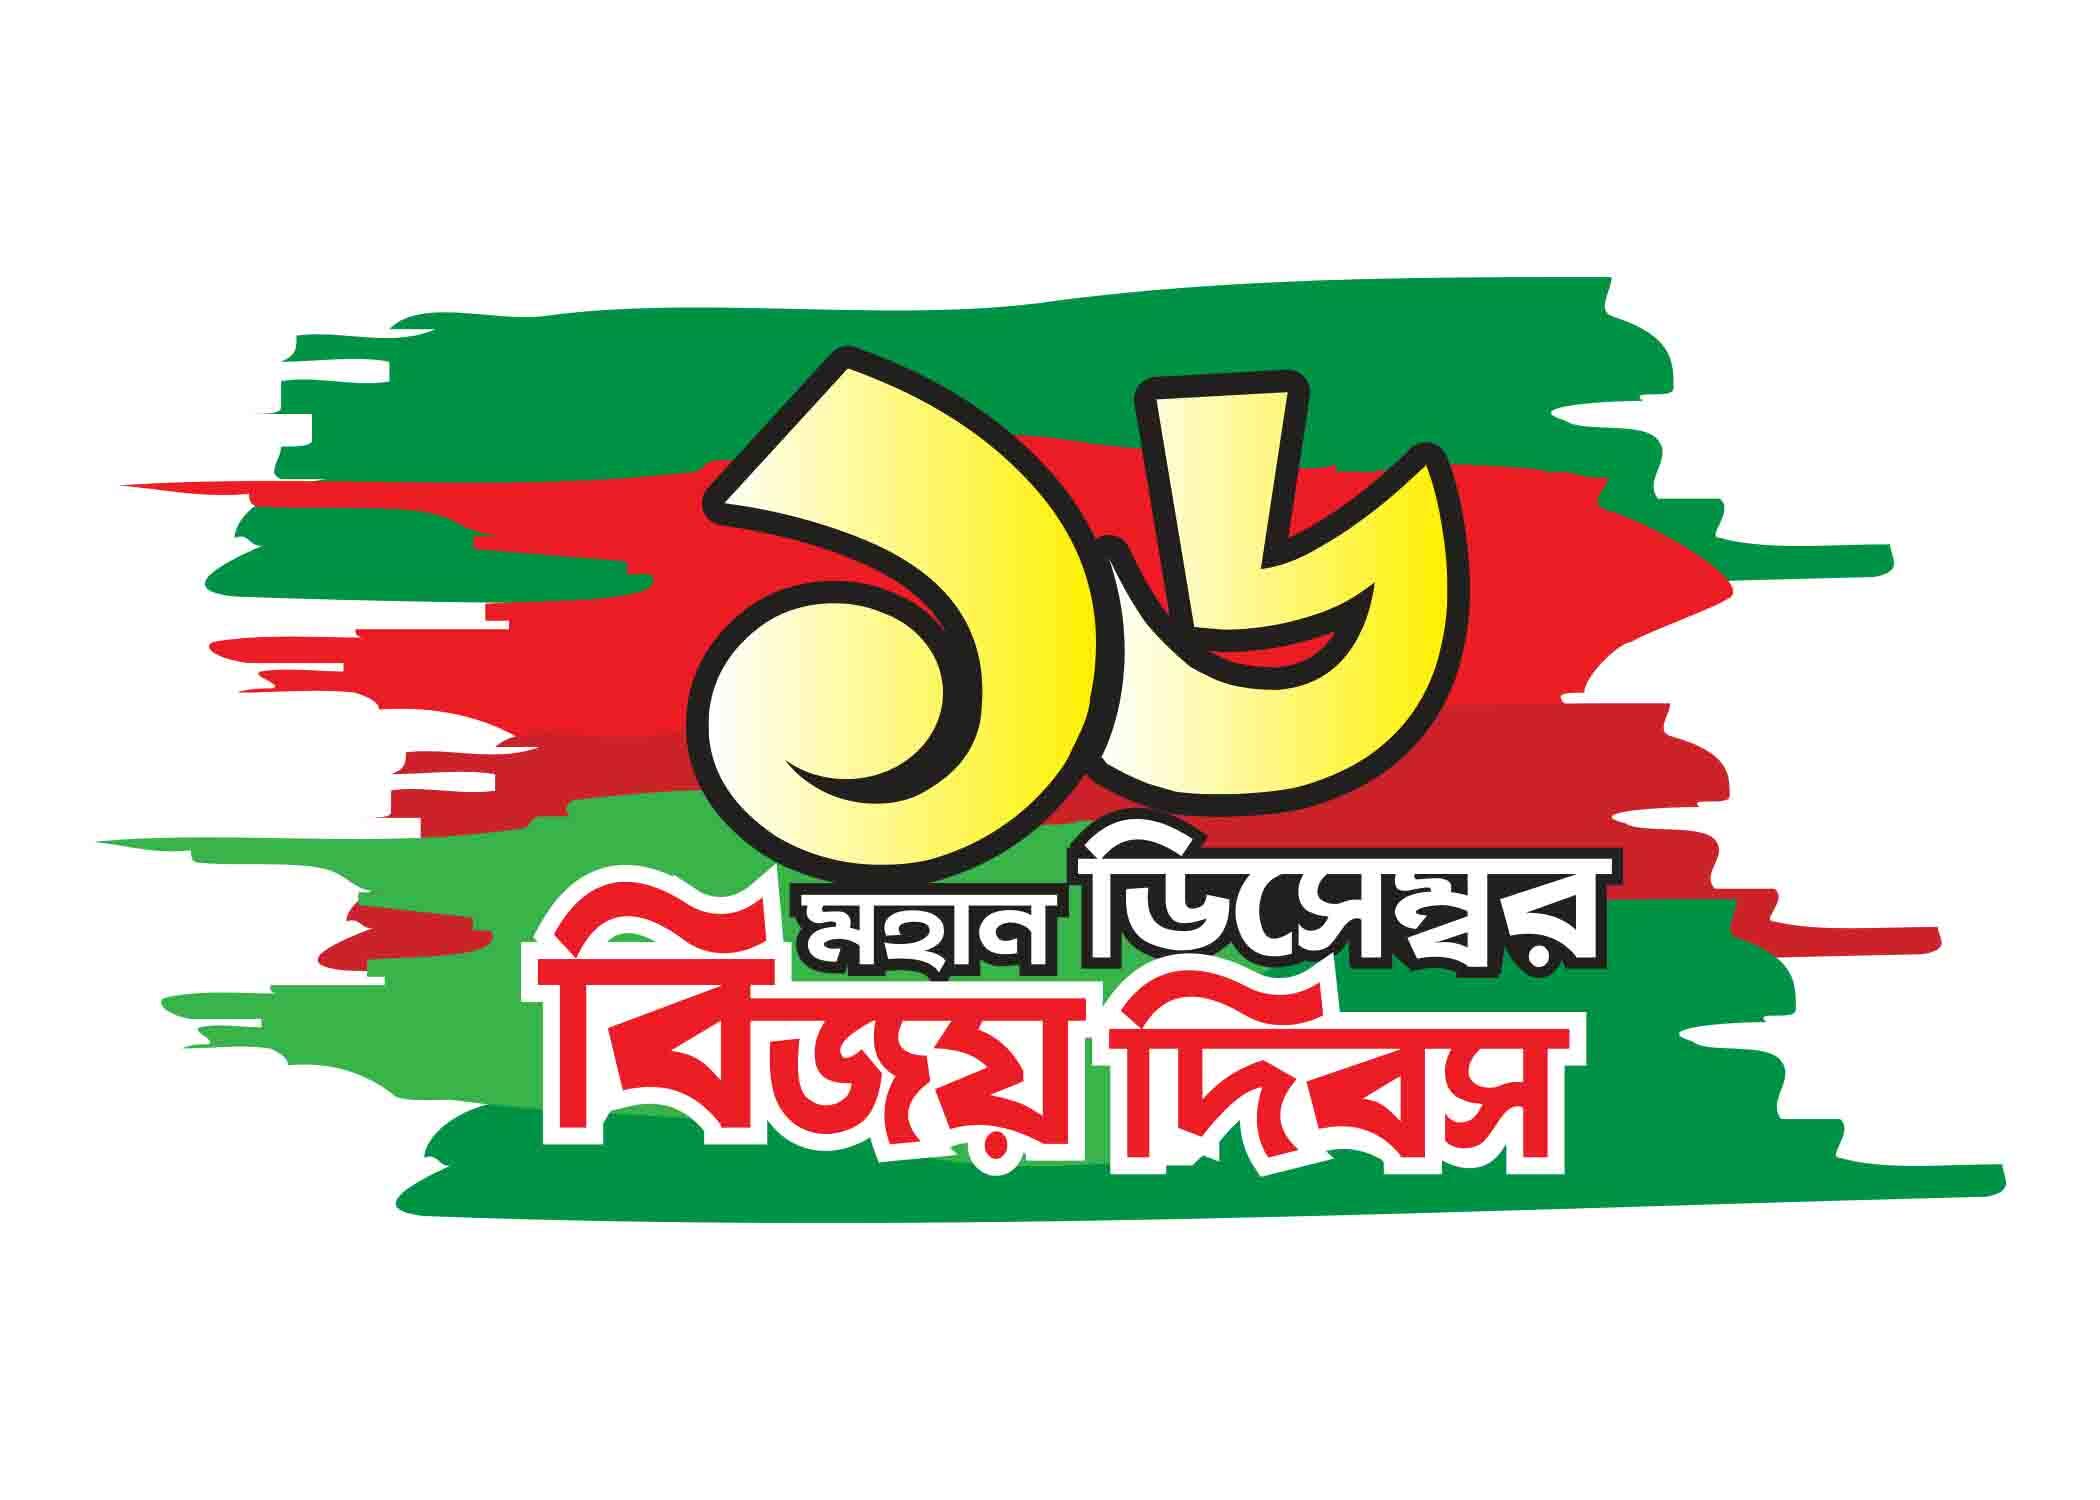 ১৬ ডিসেম্বর মহান বিজয় দিবস টাইপোগ্রাফি । Bangla Typography PNG